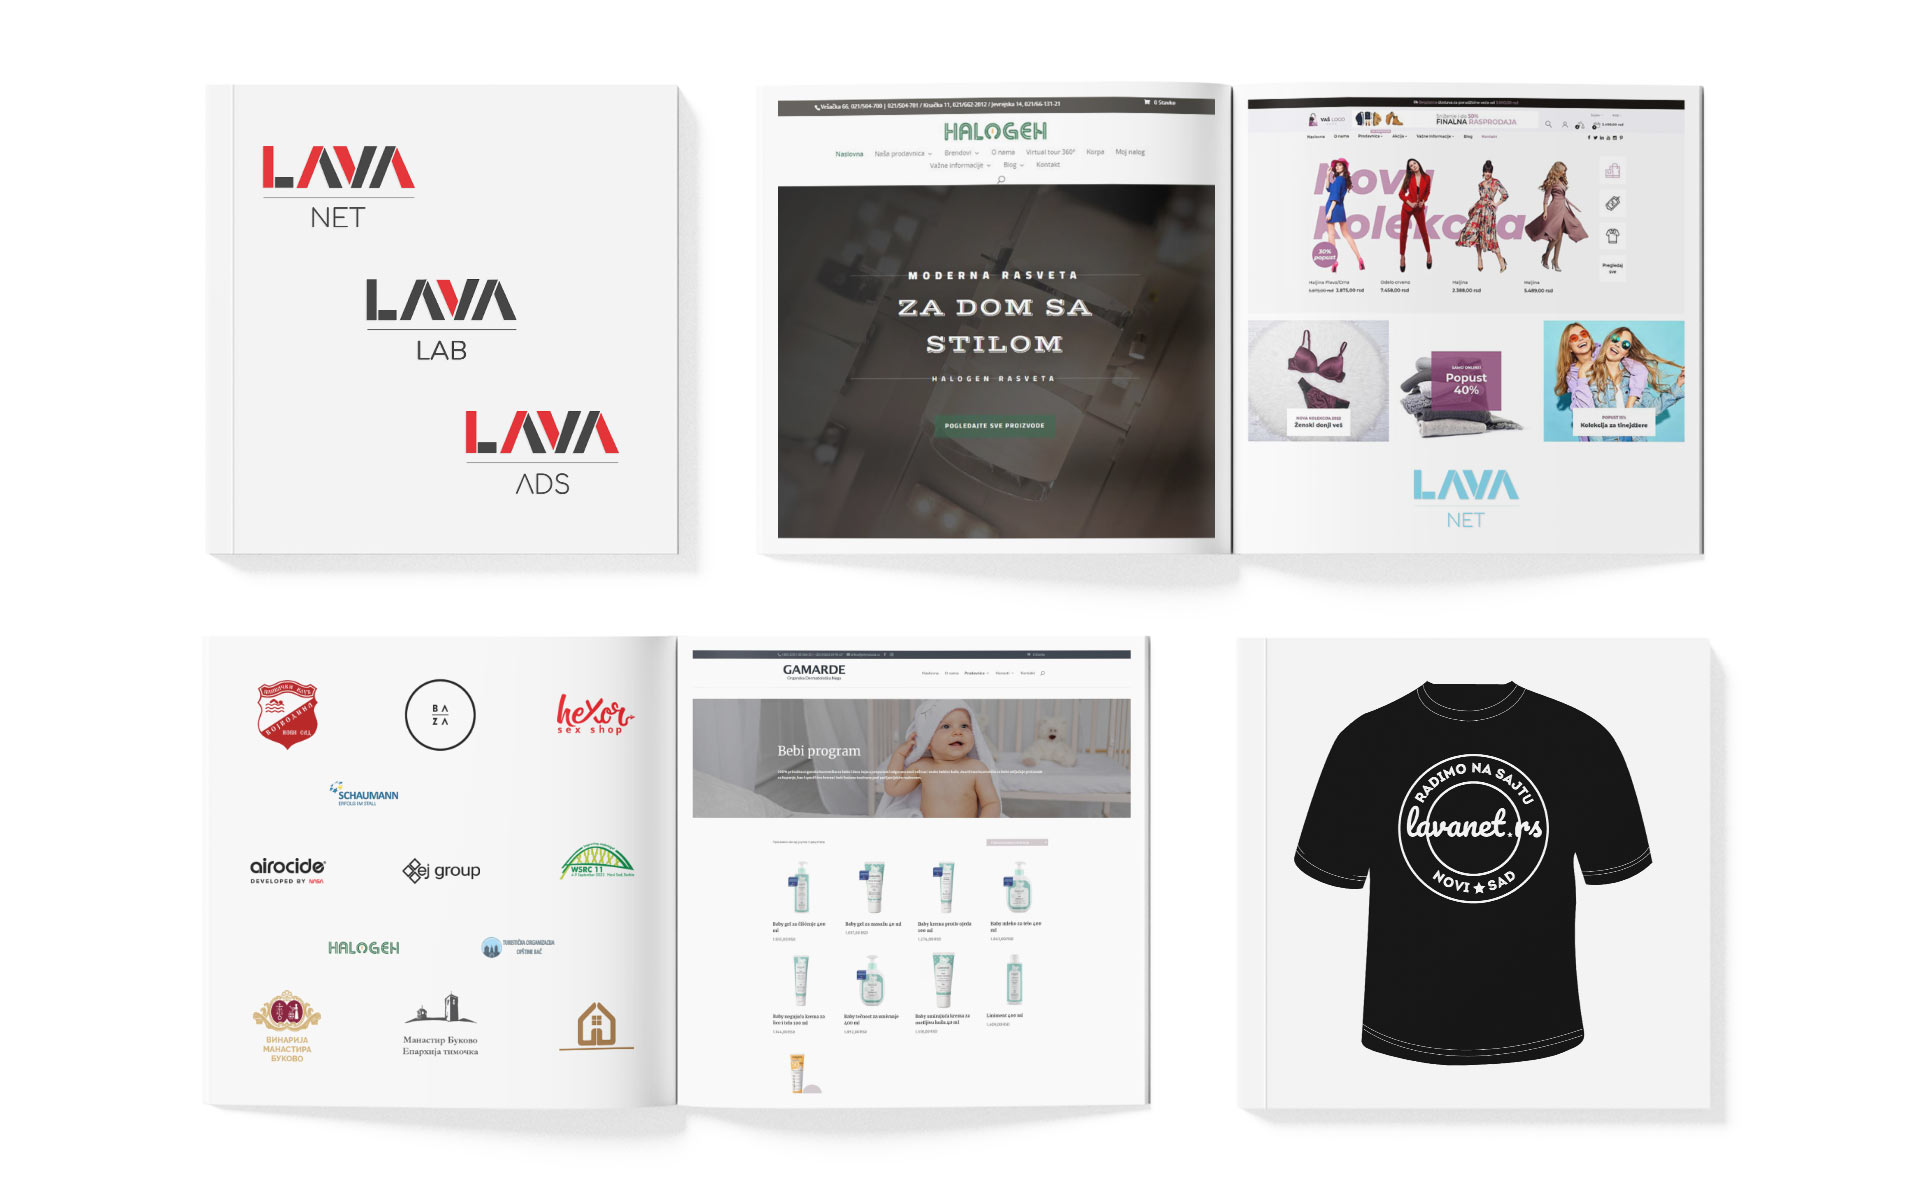 Ilustracija za Lava NET post o procesu izrade sajtova i web shopova.